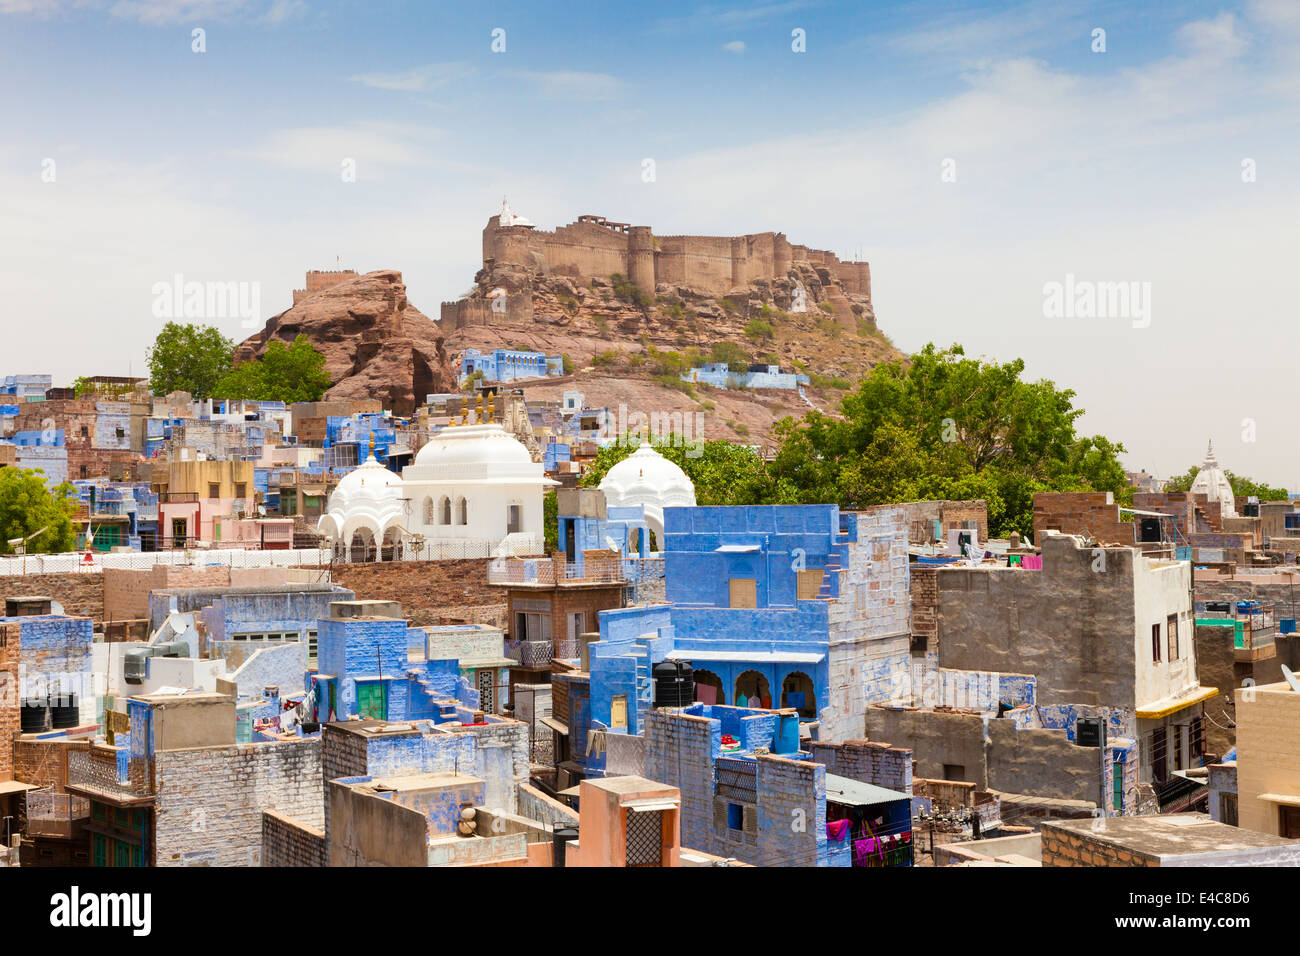 View of Jodhpur city and Mehrangarh Fort, Jodhpur, Rajasthan, India Stock Photo